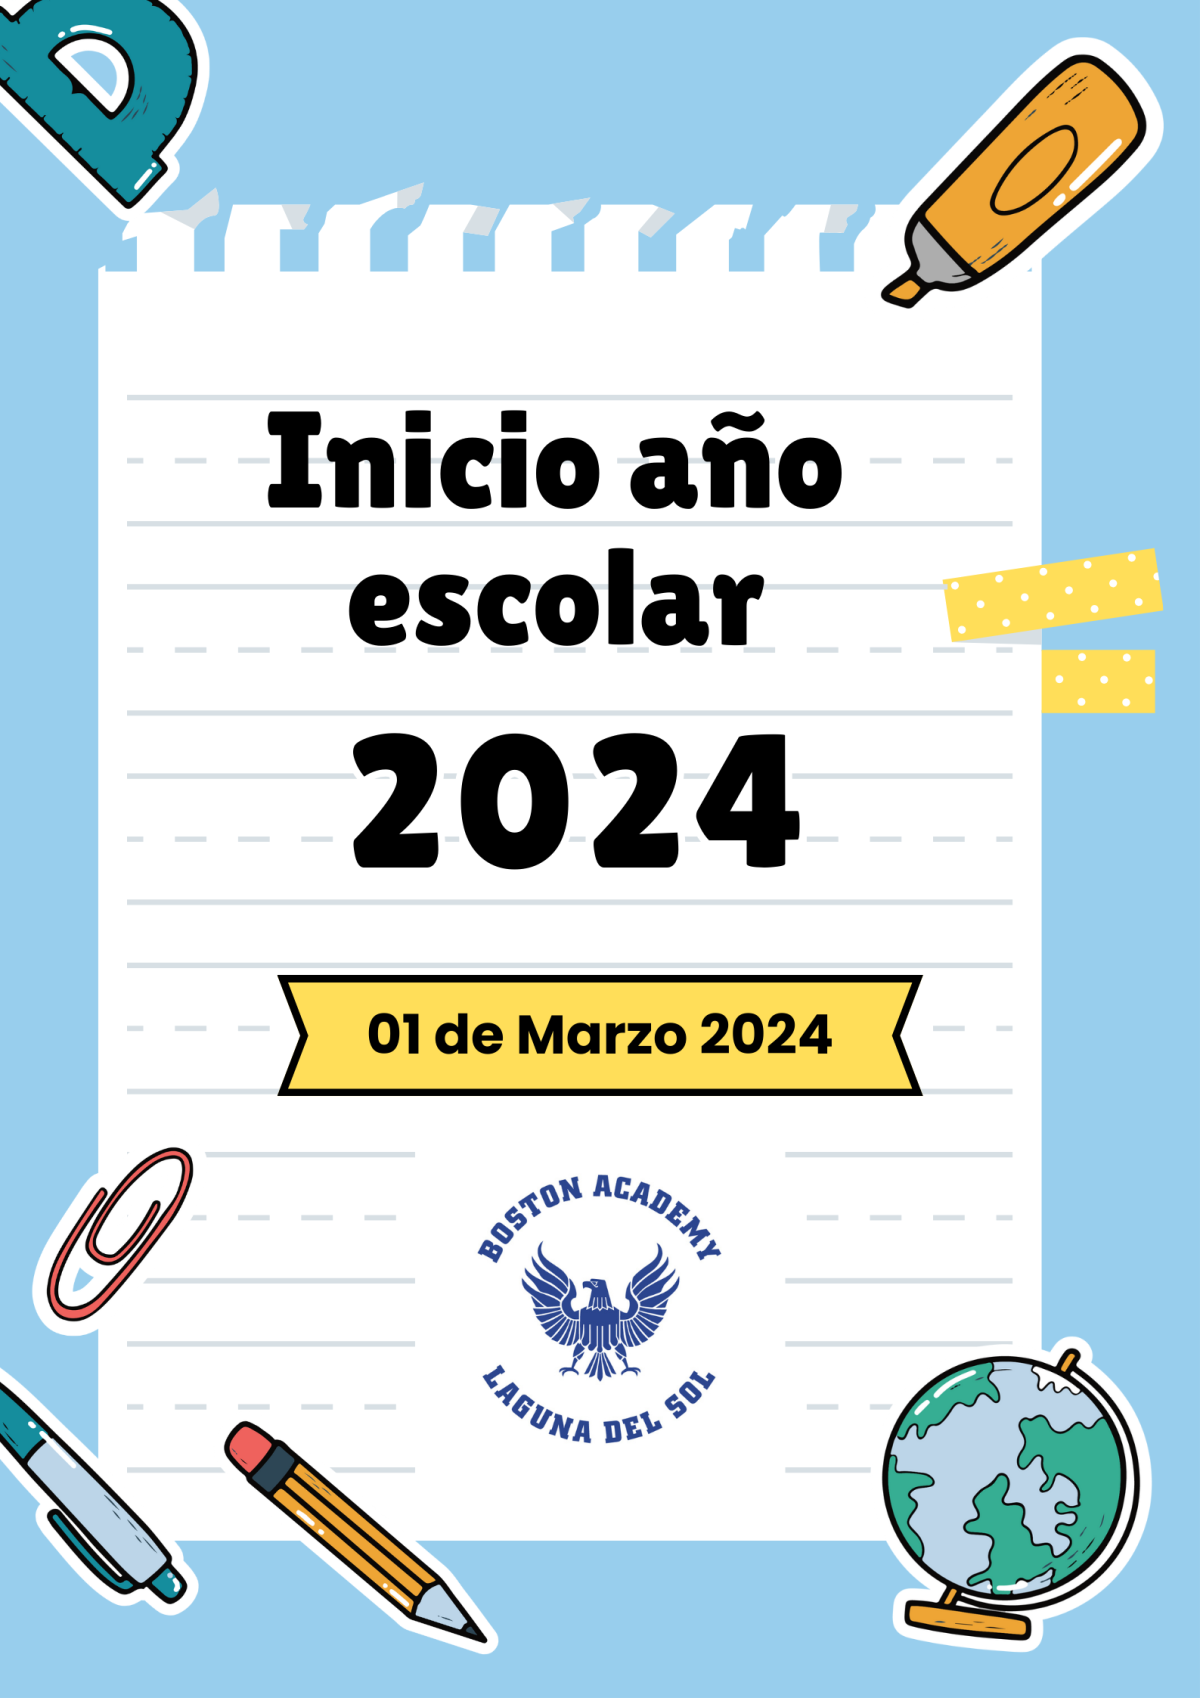 INICIO AÑO ESCOLAR 2024